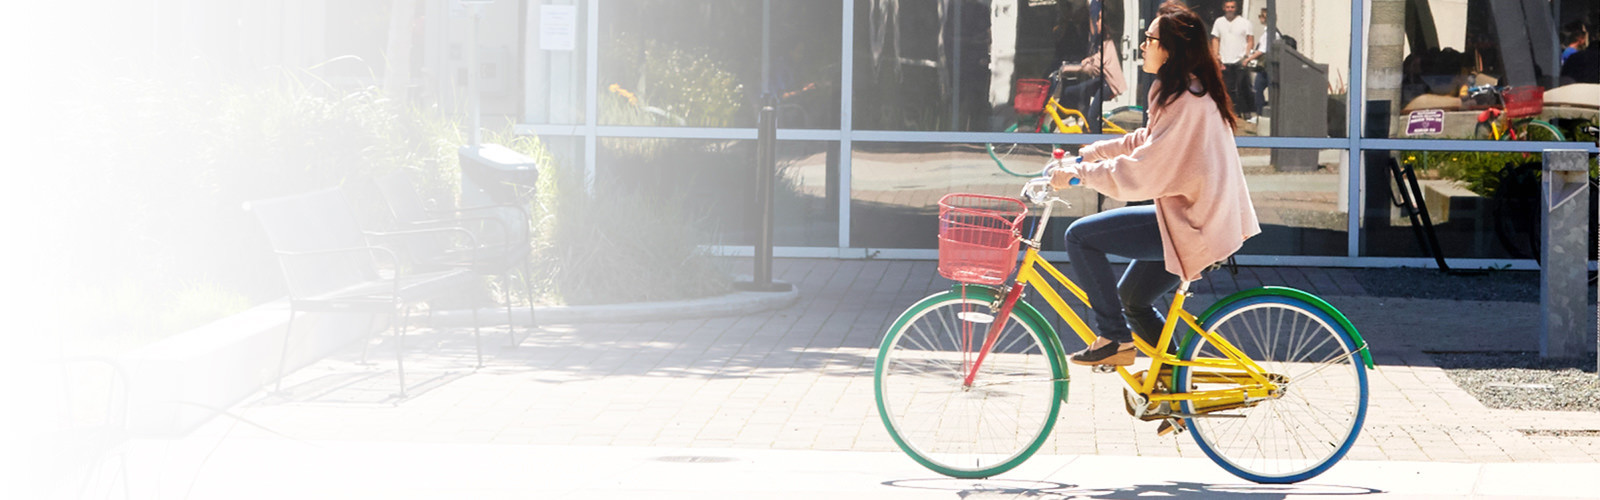 kvinna ridning en cykel på en stadsgata